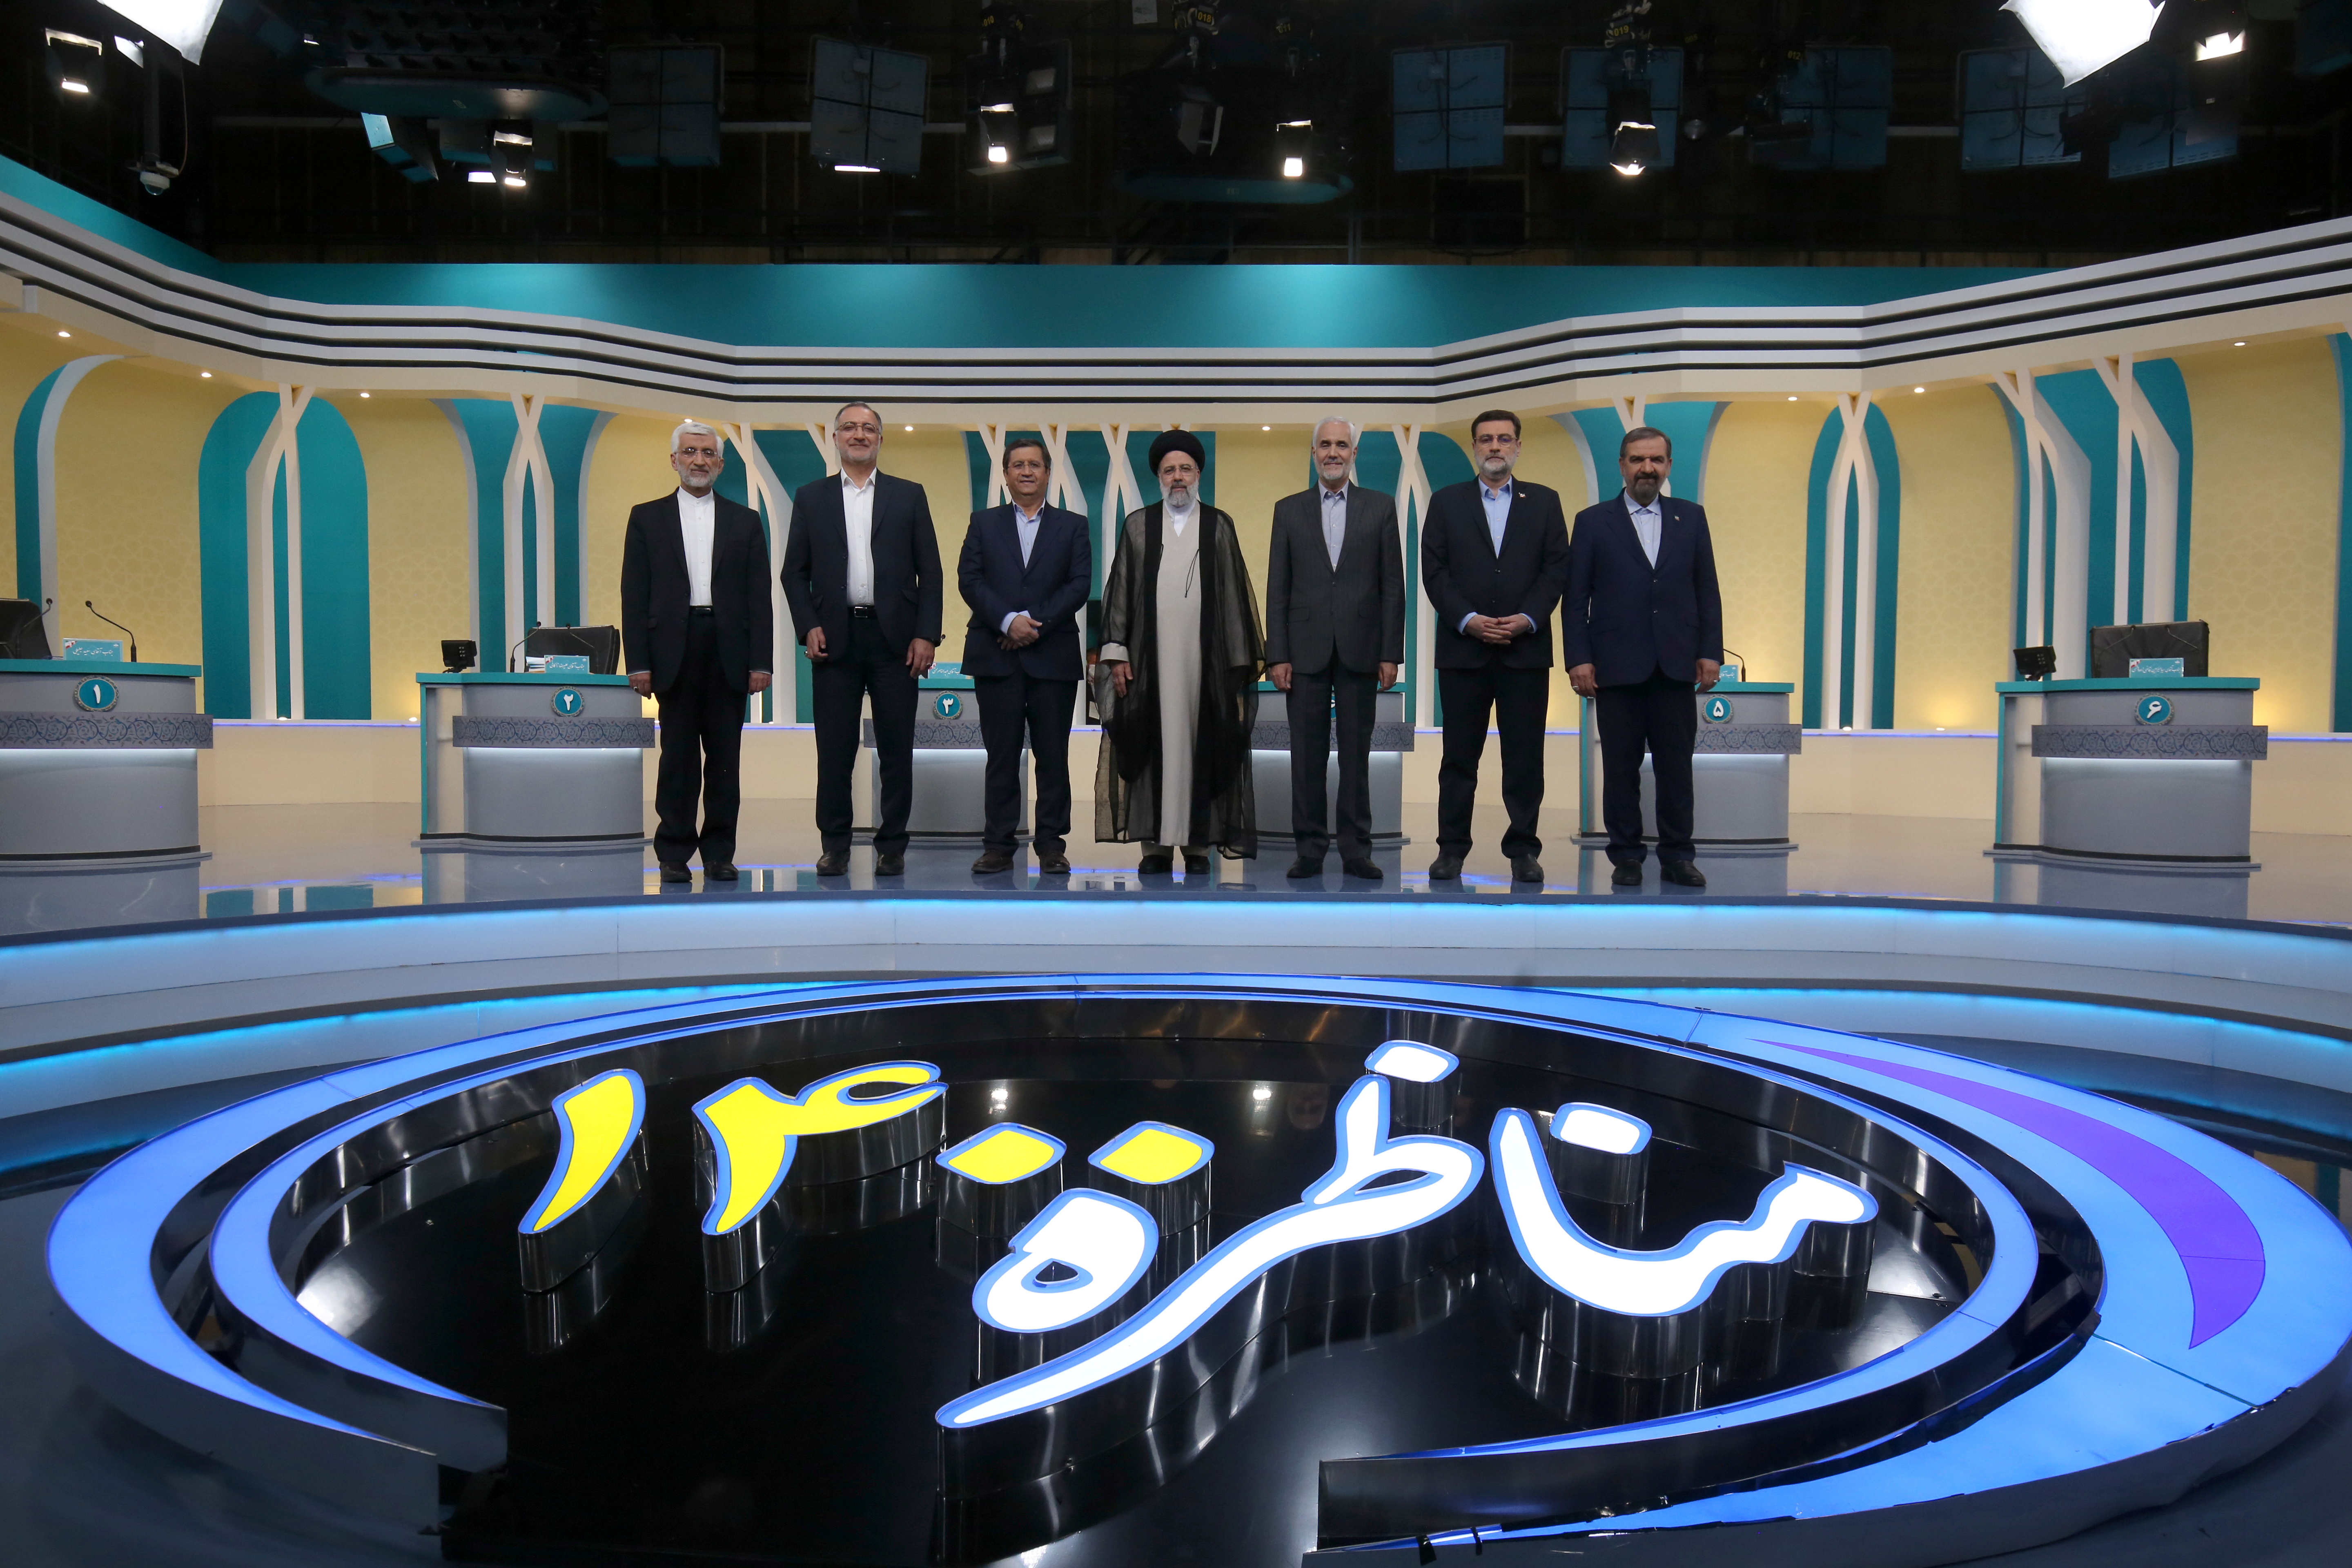 Election debate at a television studio, in Tehran